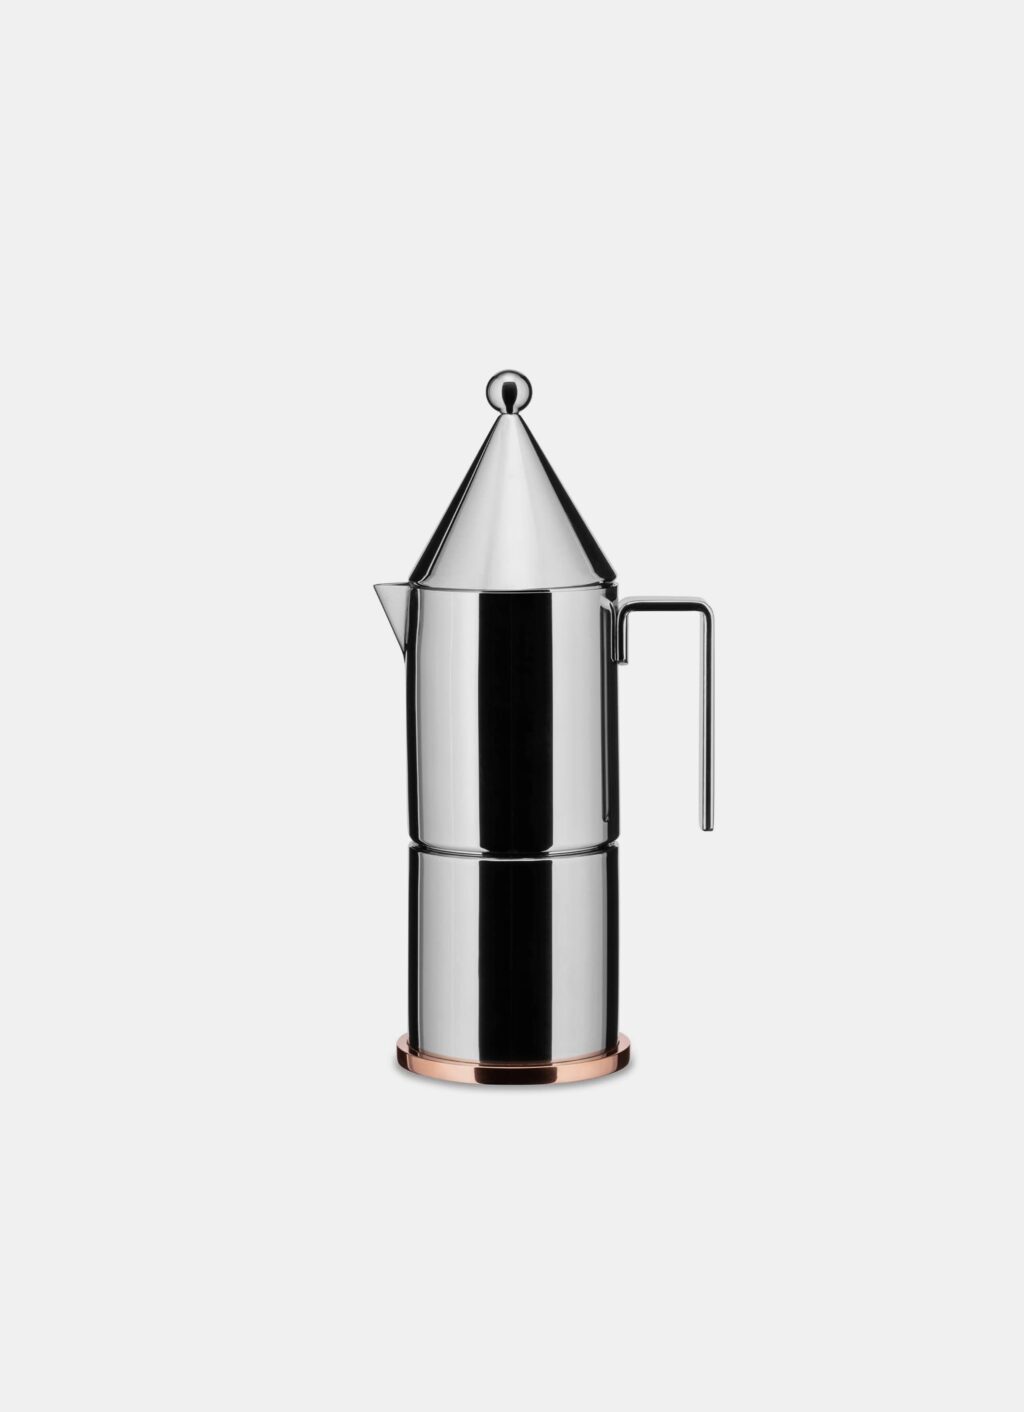 Alessi - La Conica - Espresso maker - Aldo Rossi - 3 cups - Induction